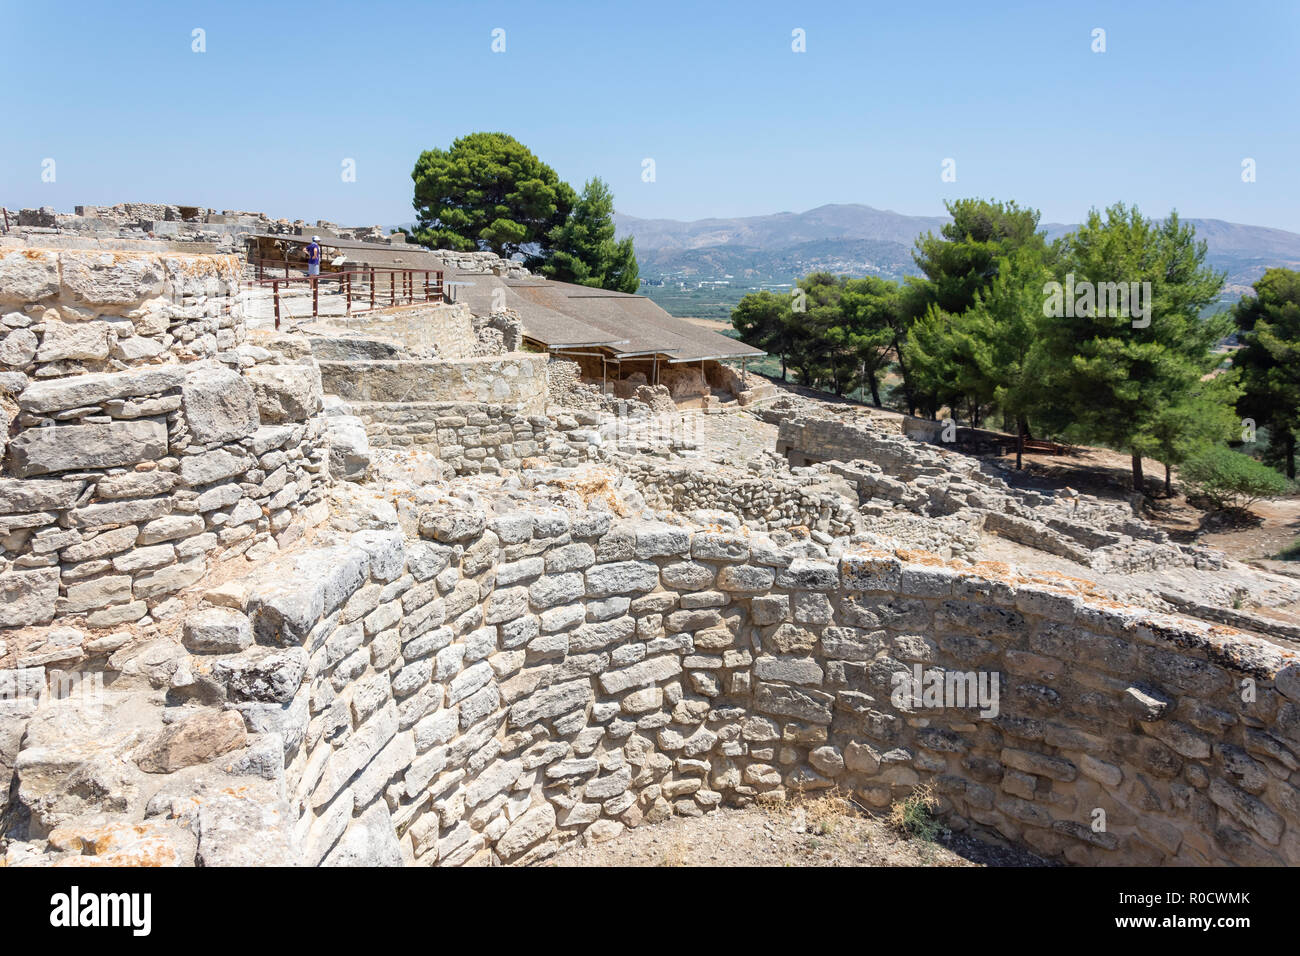 Los Kouloures, Festos (Phaestus) sitio arqueológico de la Edad del Bronce, Faistos, Región Irakleio, Creta (Creta), Grecia Foto de stock